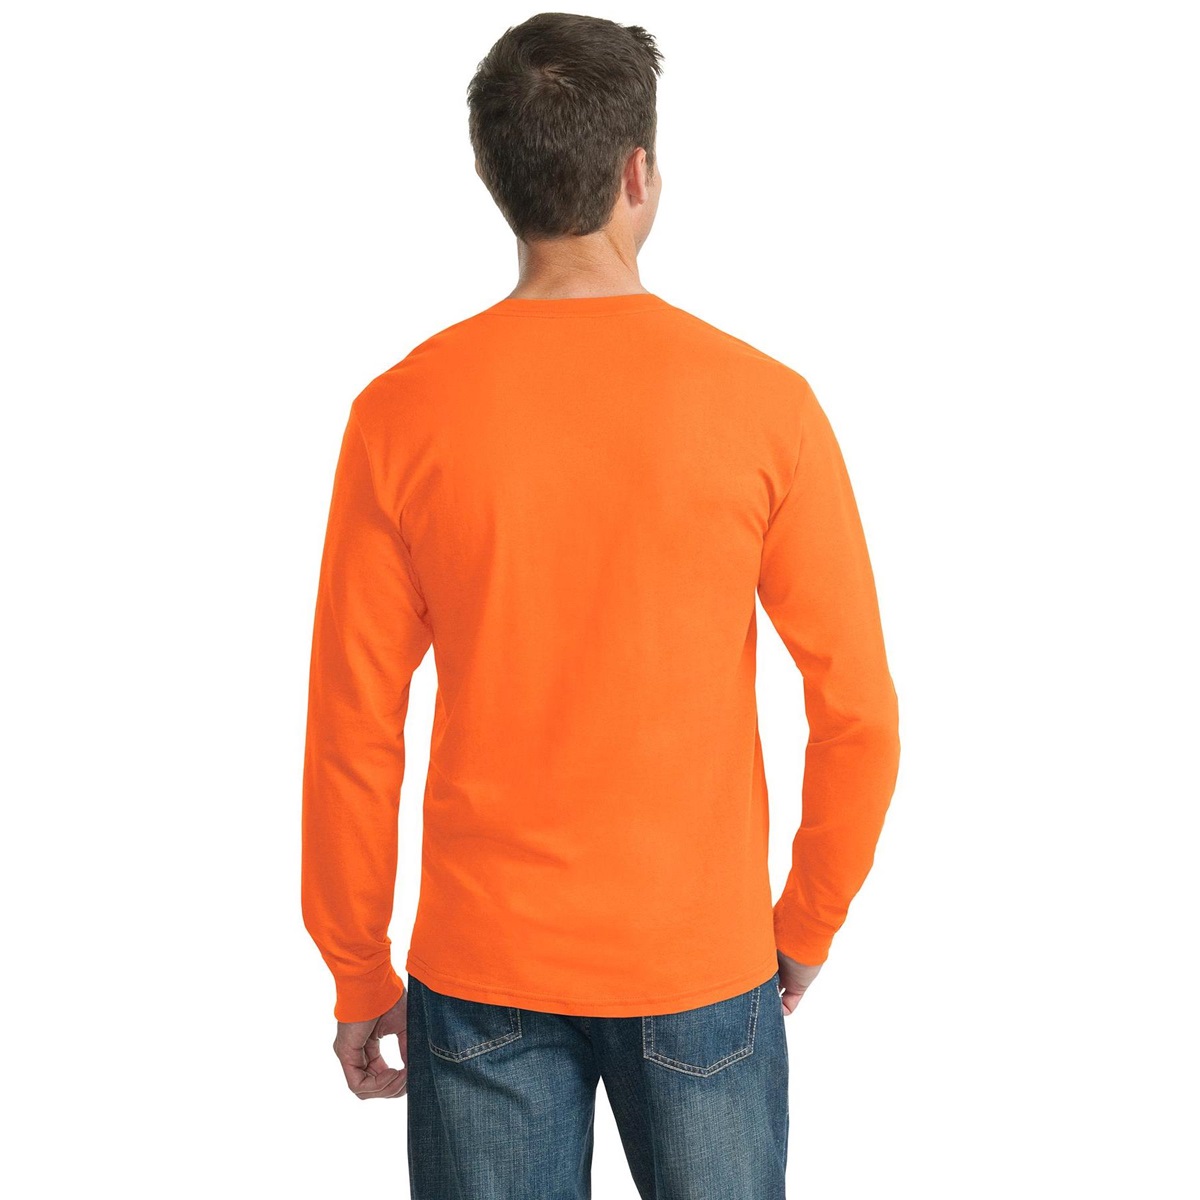 Jerzees 29LS Heavyweight Blend Long Sleeve T-Shirt - Safety Orange ...